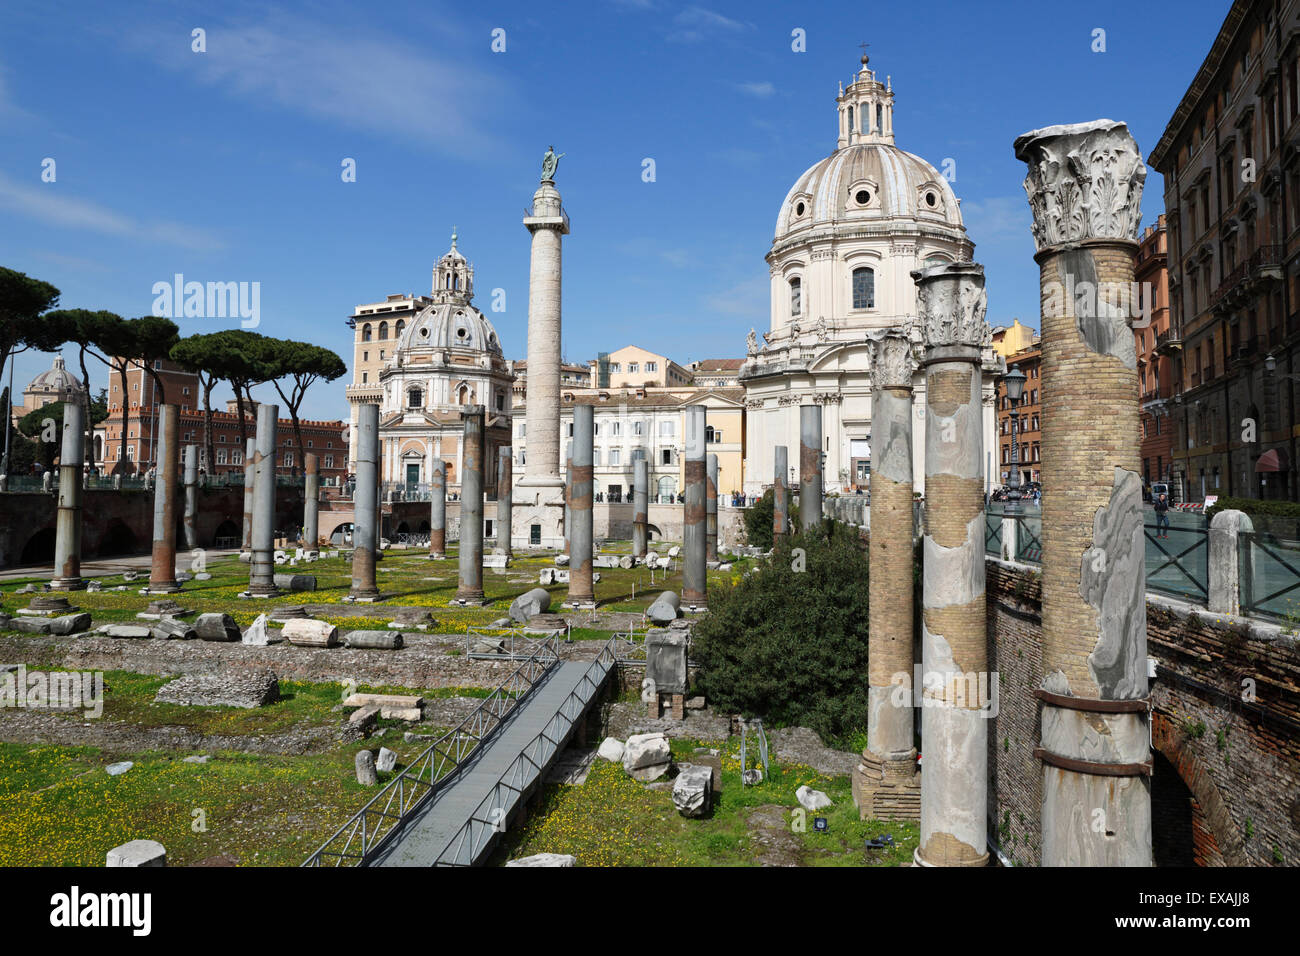 Ruins of Trajan Forum (Foro Traiano) with Trajan's Column and Santa Maria di Loreto, UNESCO Site, Rome, Lazio, Italy Stock Photo